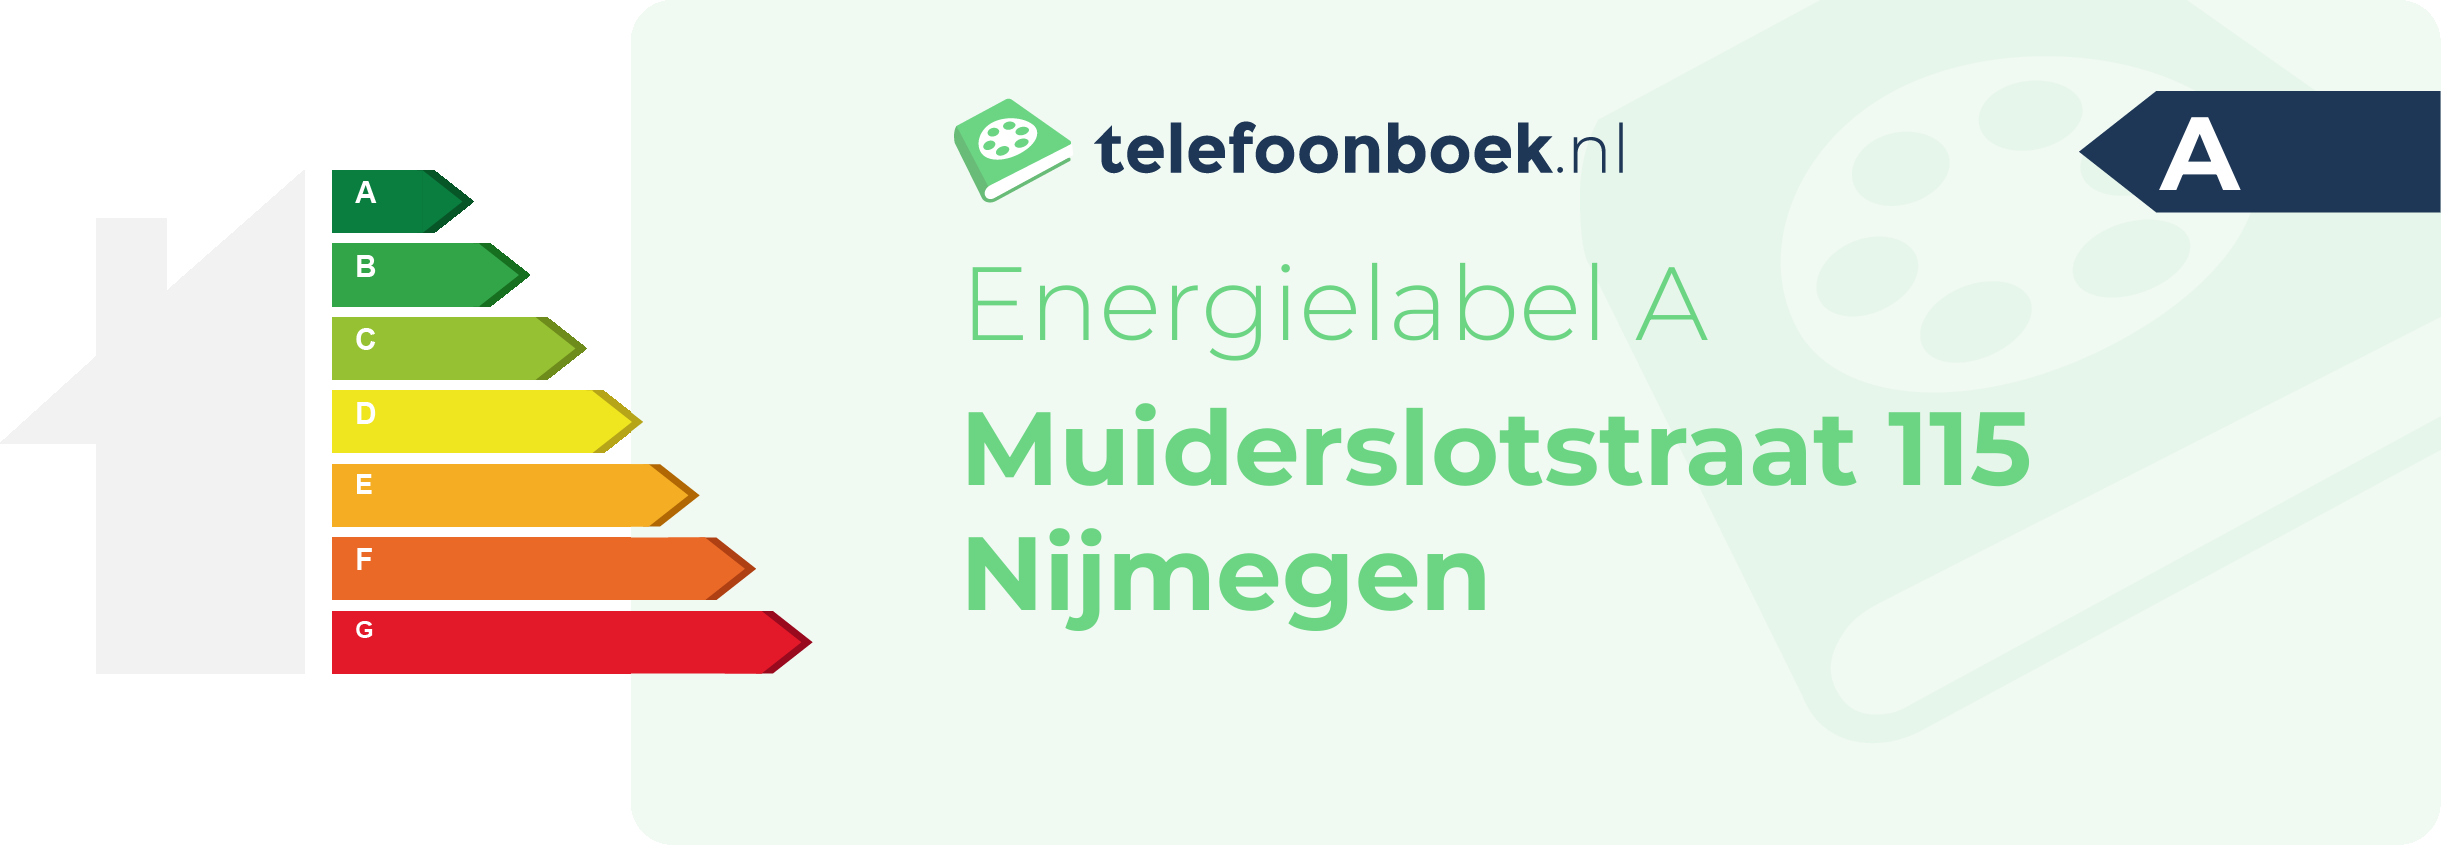 Energielabel Muiderslotstraat 115 Nijmegen